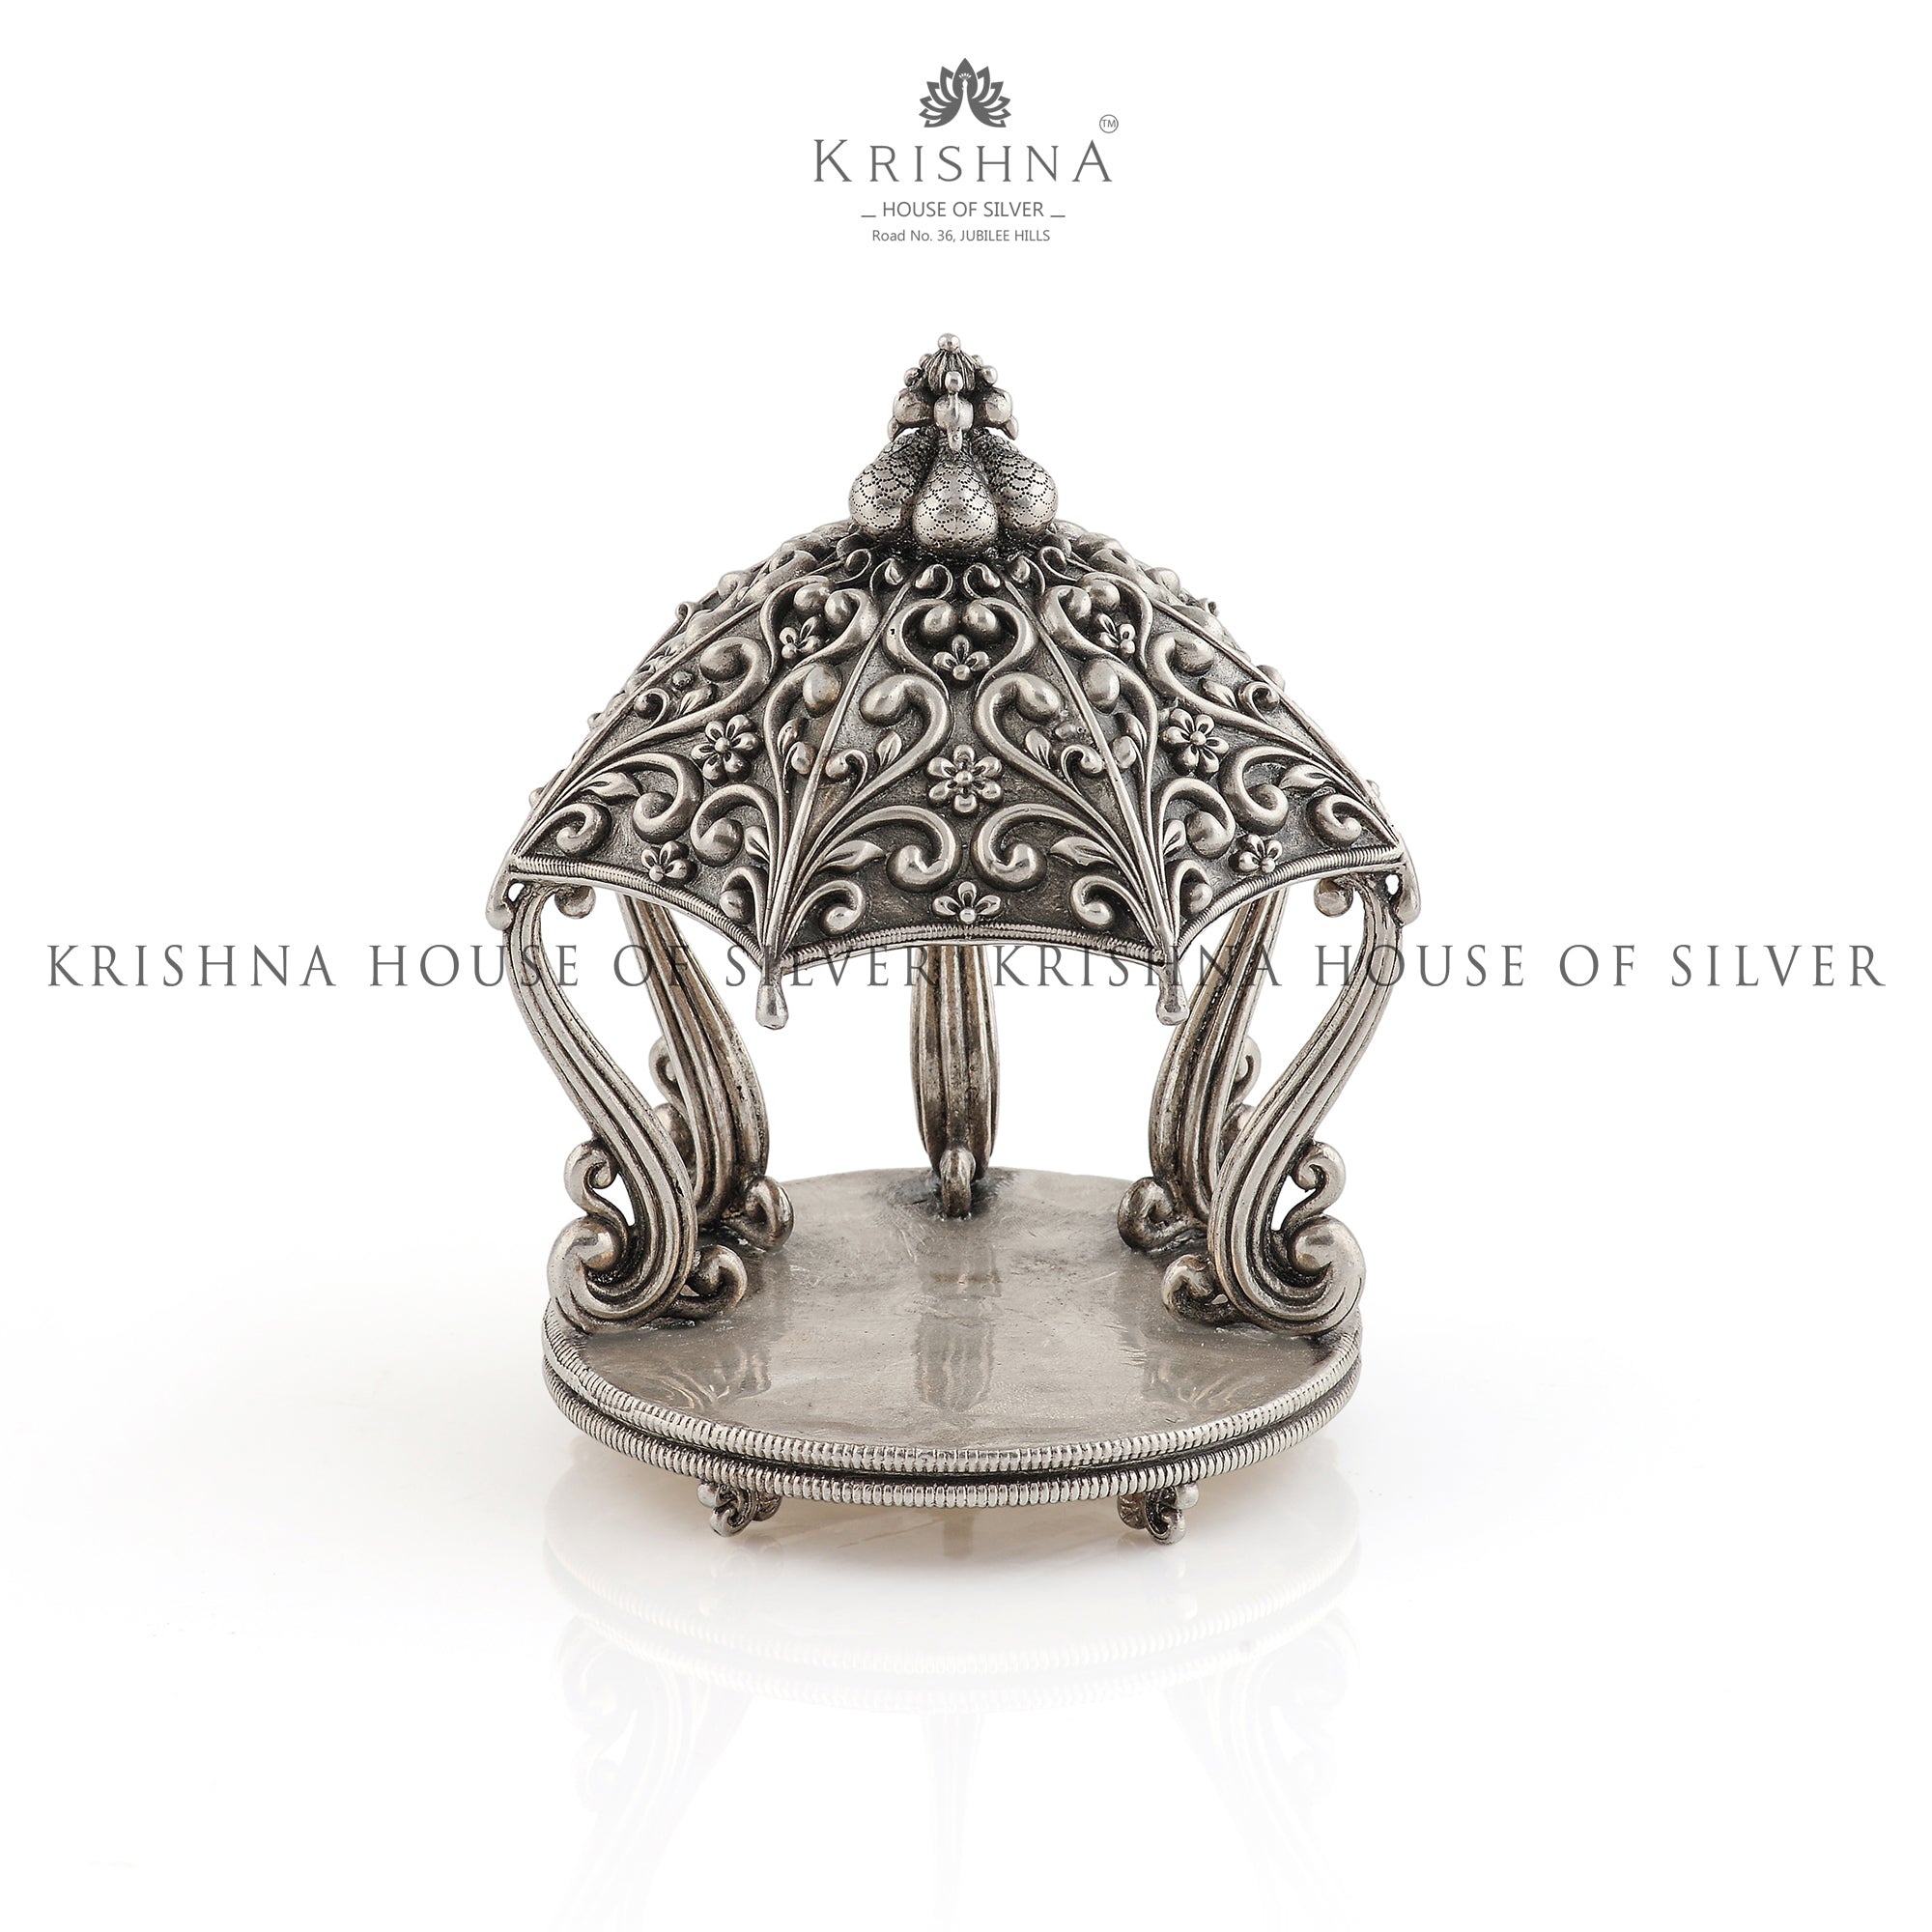 Contemporary Silver Shrine for Home